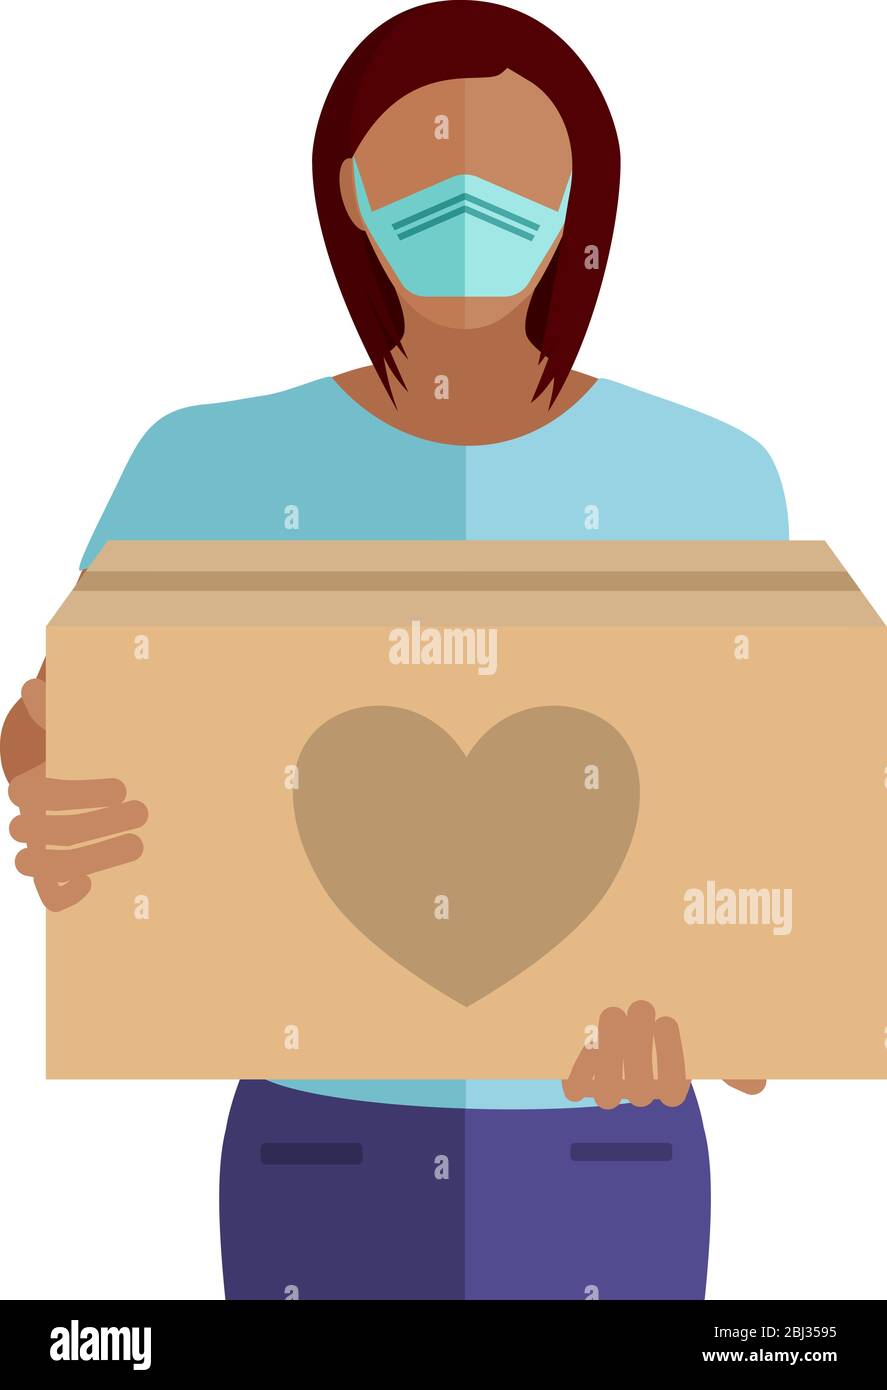 Les bénévoles pour aider les autres dans le besoin avec des boîtes de dons pendant la pandémie de coronavirus COVID-19 Illustration de Vecteur